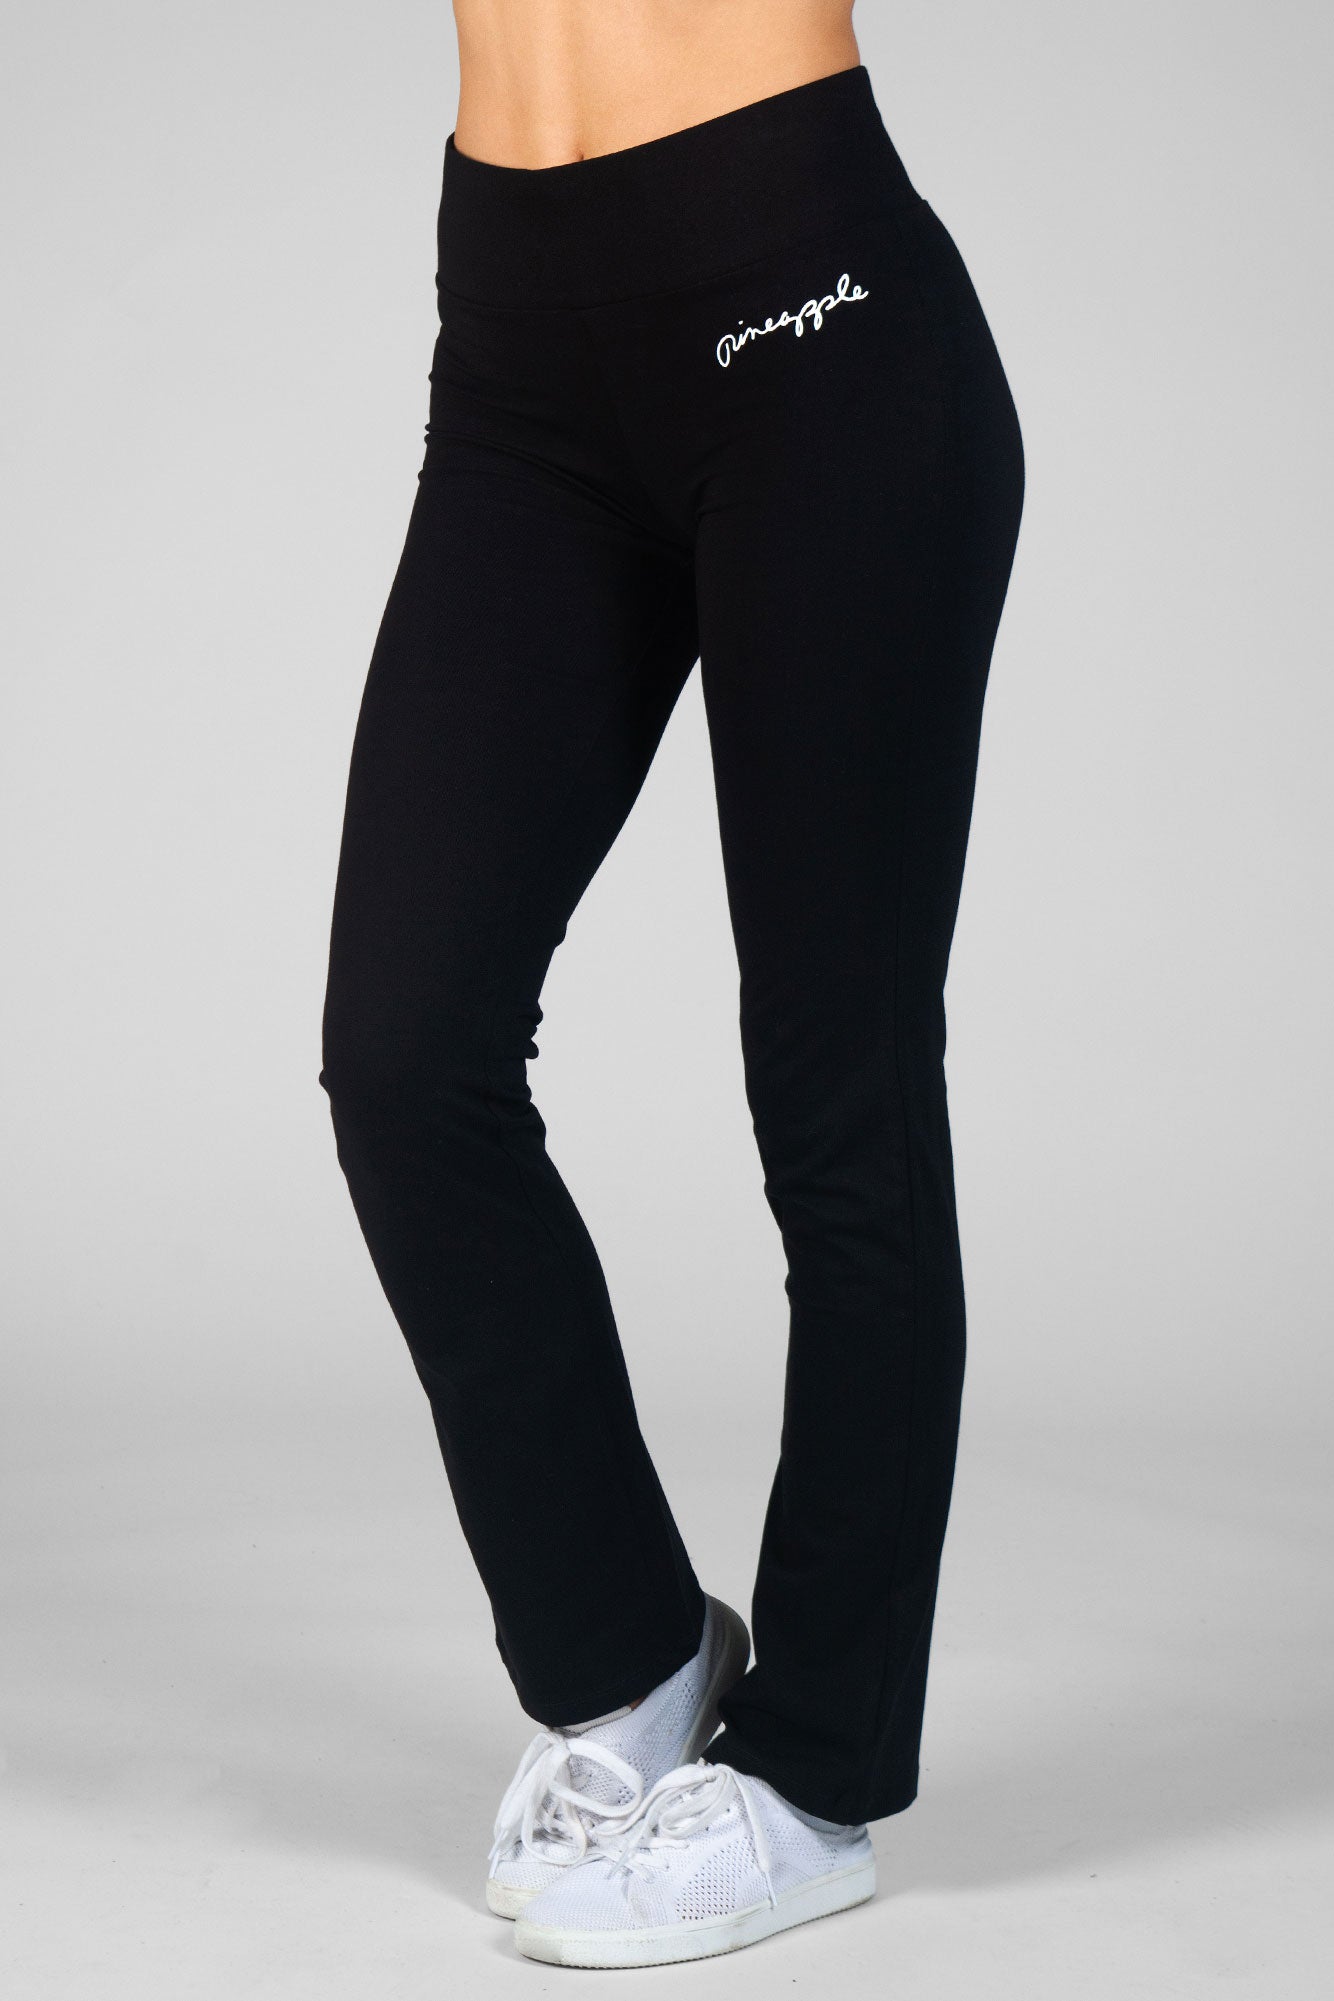 Madame Black Trouser  Buy COLOR Black Trouser Online for  Glamly